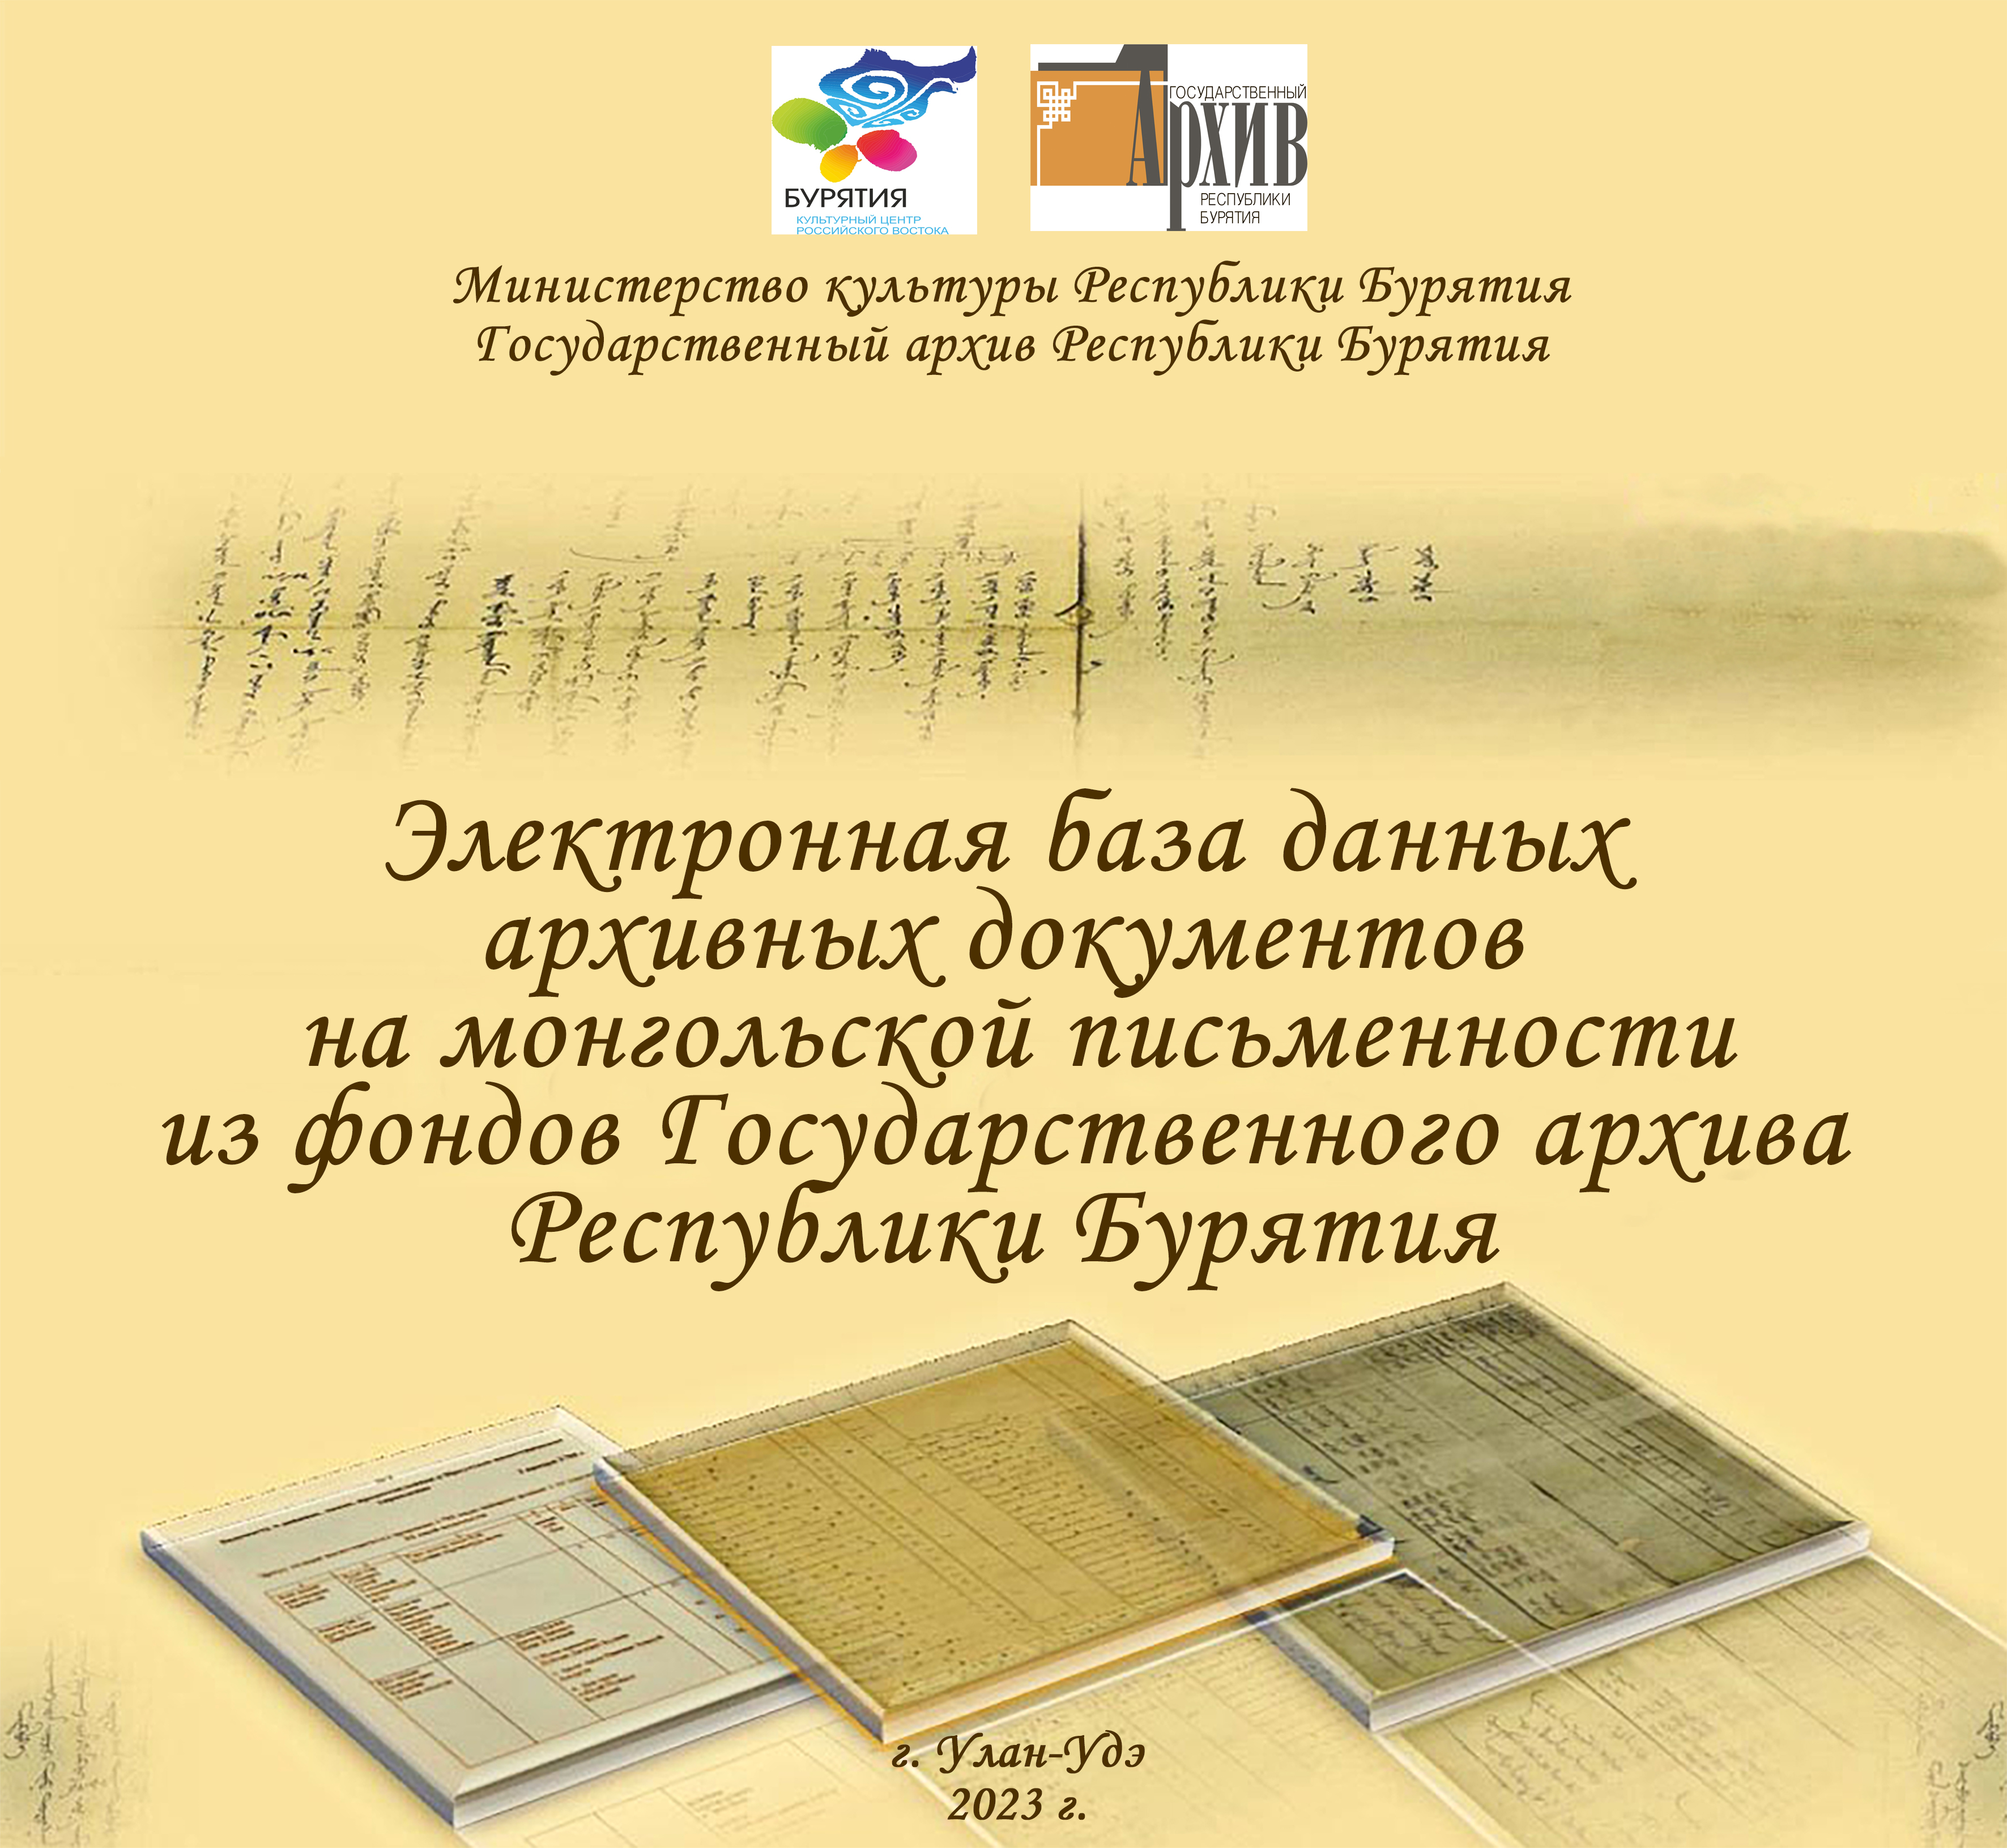 Завершены работы по переводу архивных документов на монгольской письменности